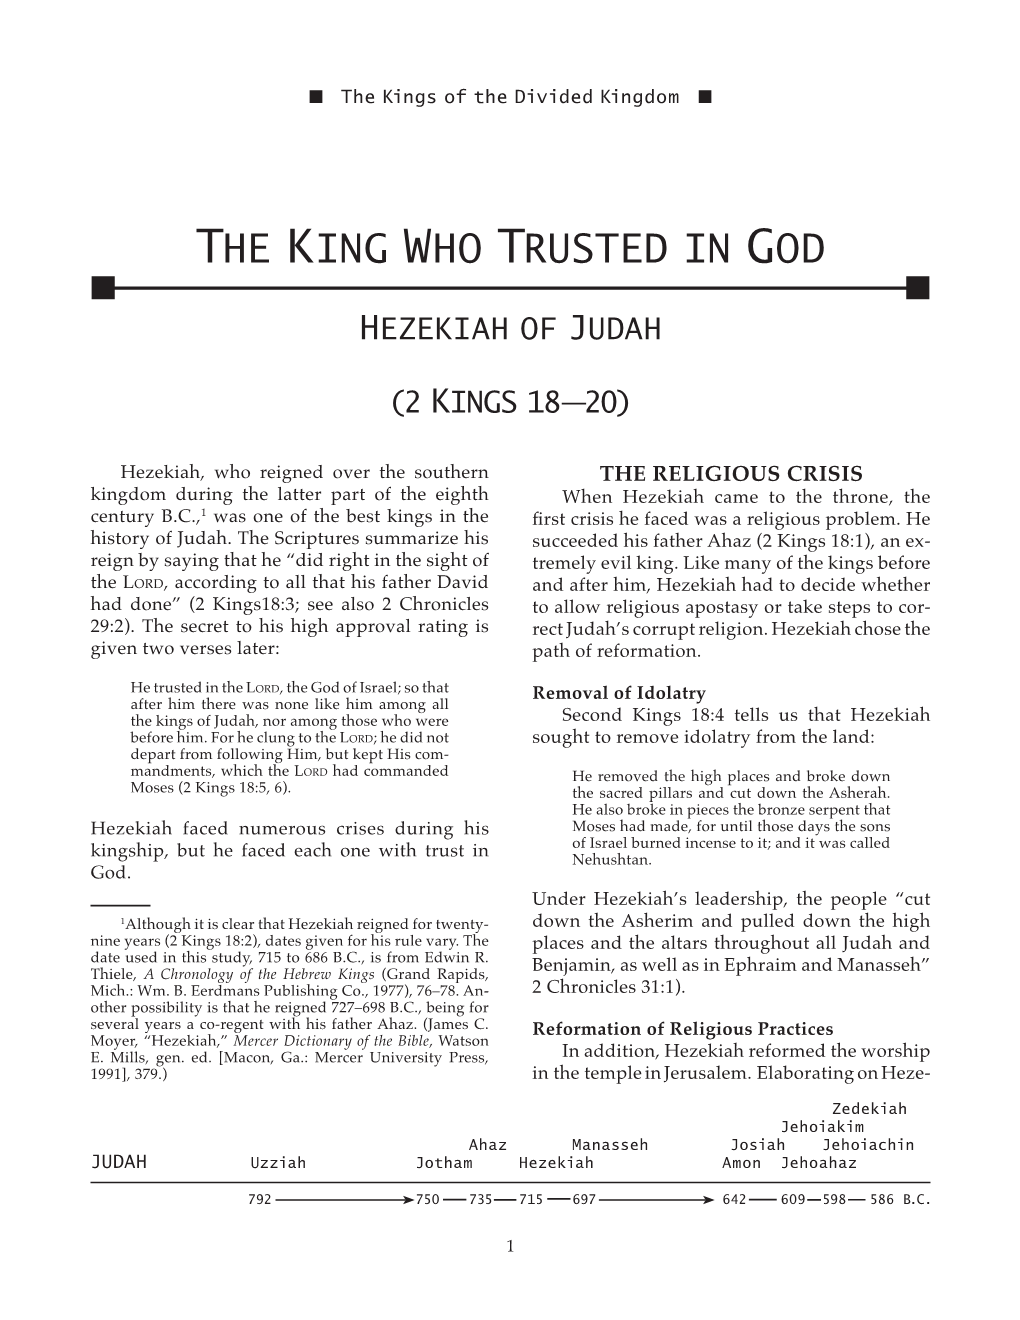 The King Who Trusted in God N N Hezekiah of Judah